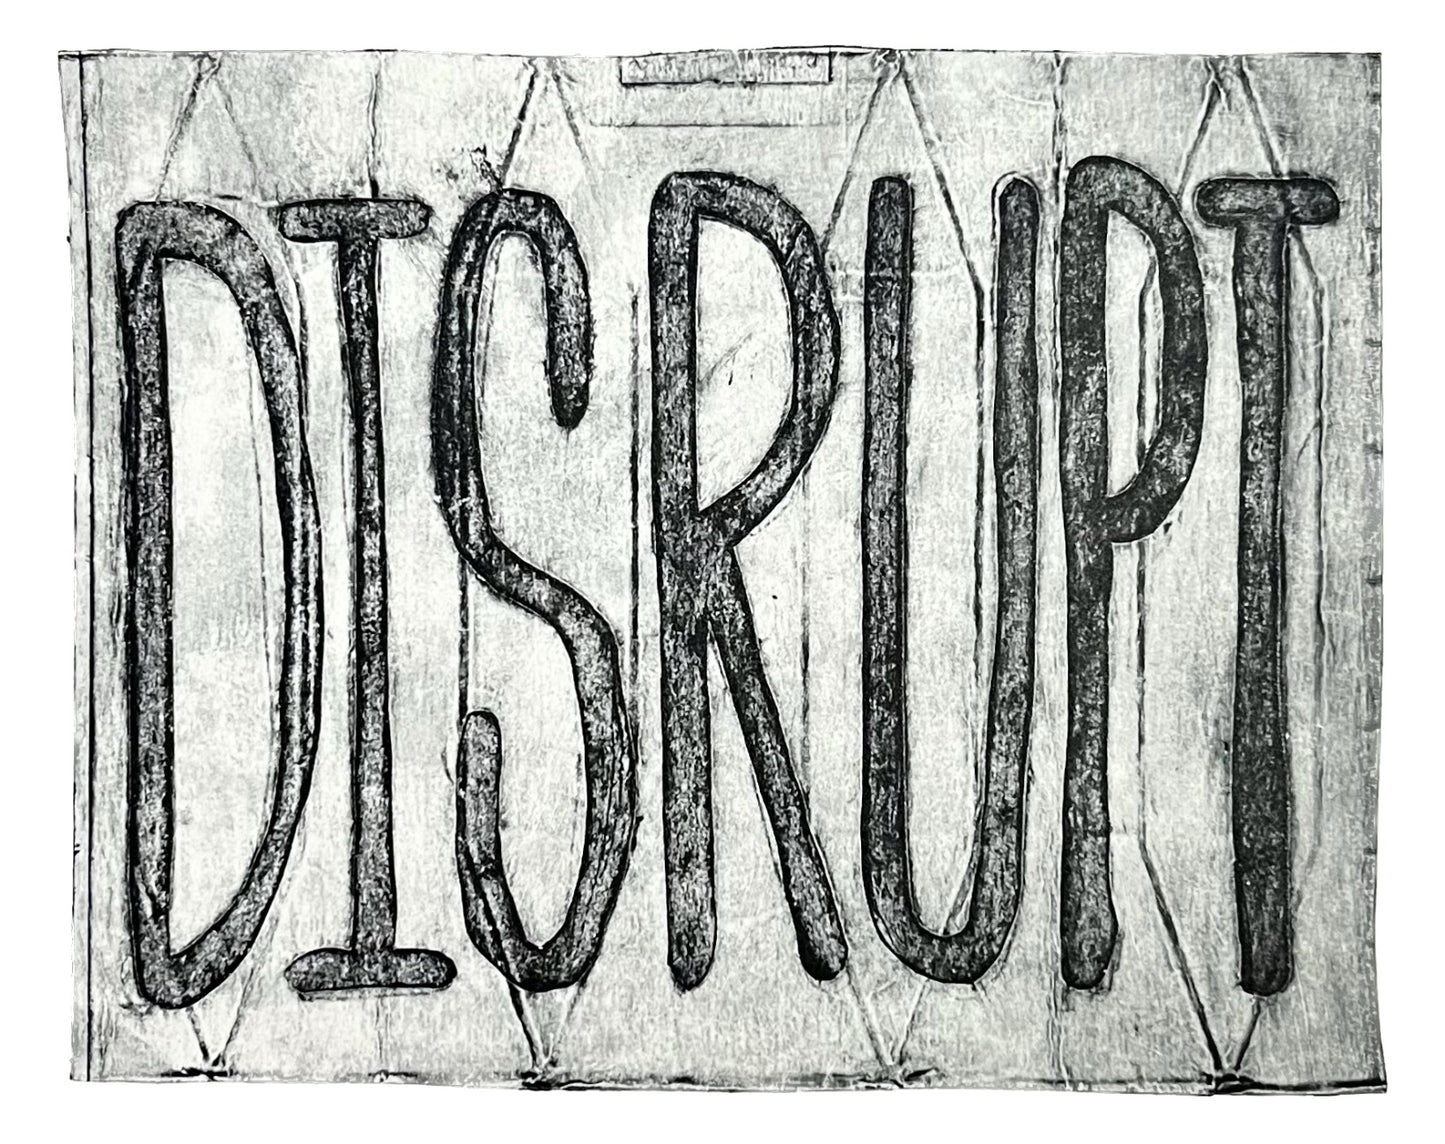 Disrupt